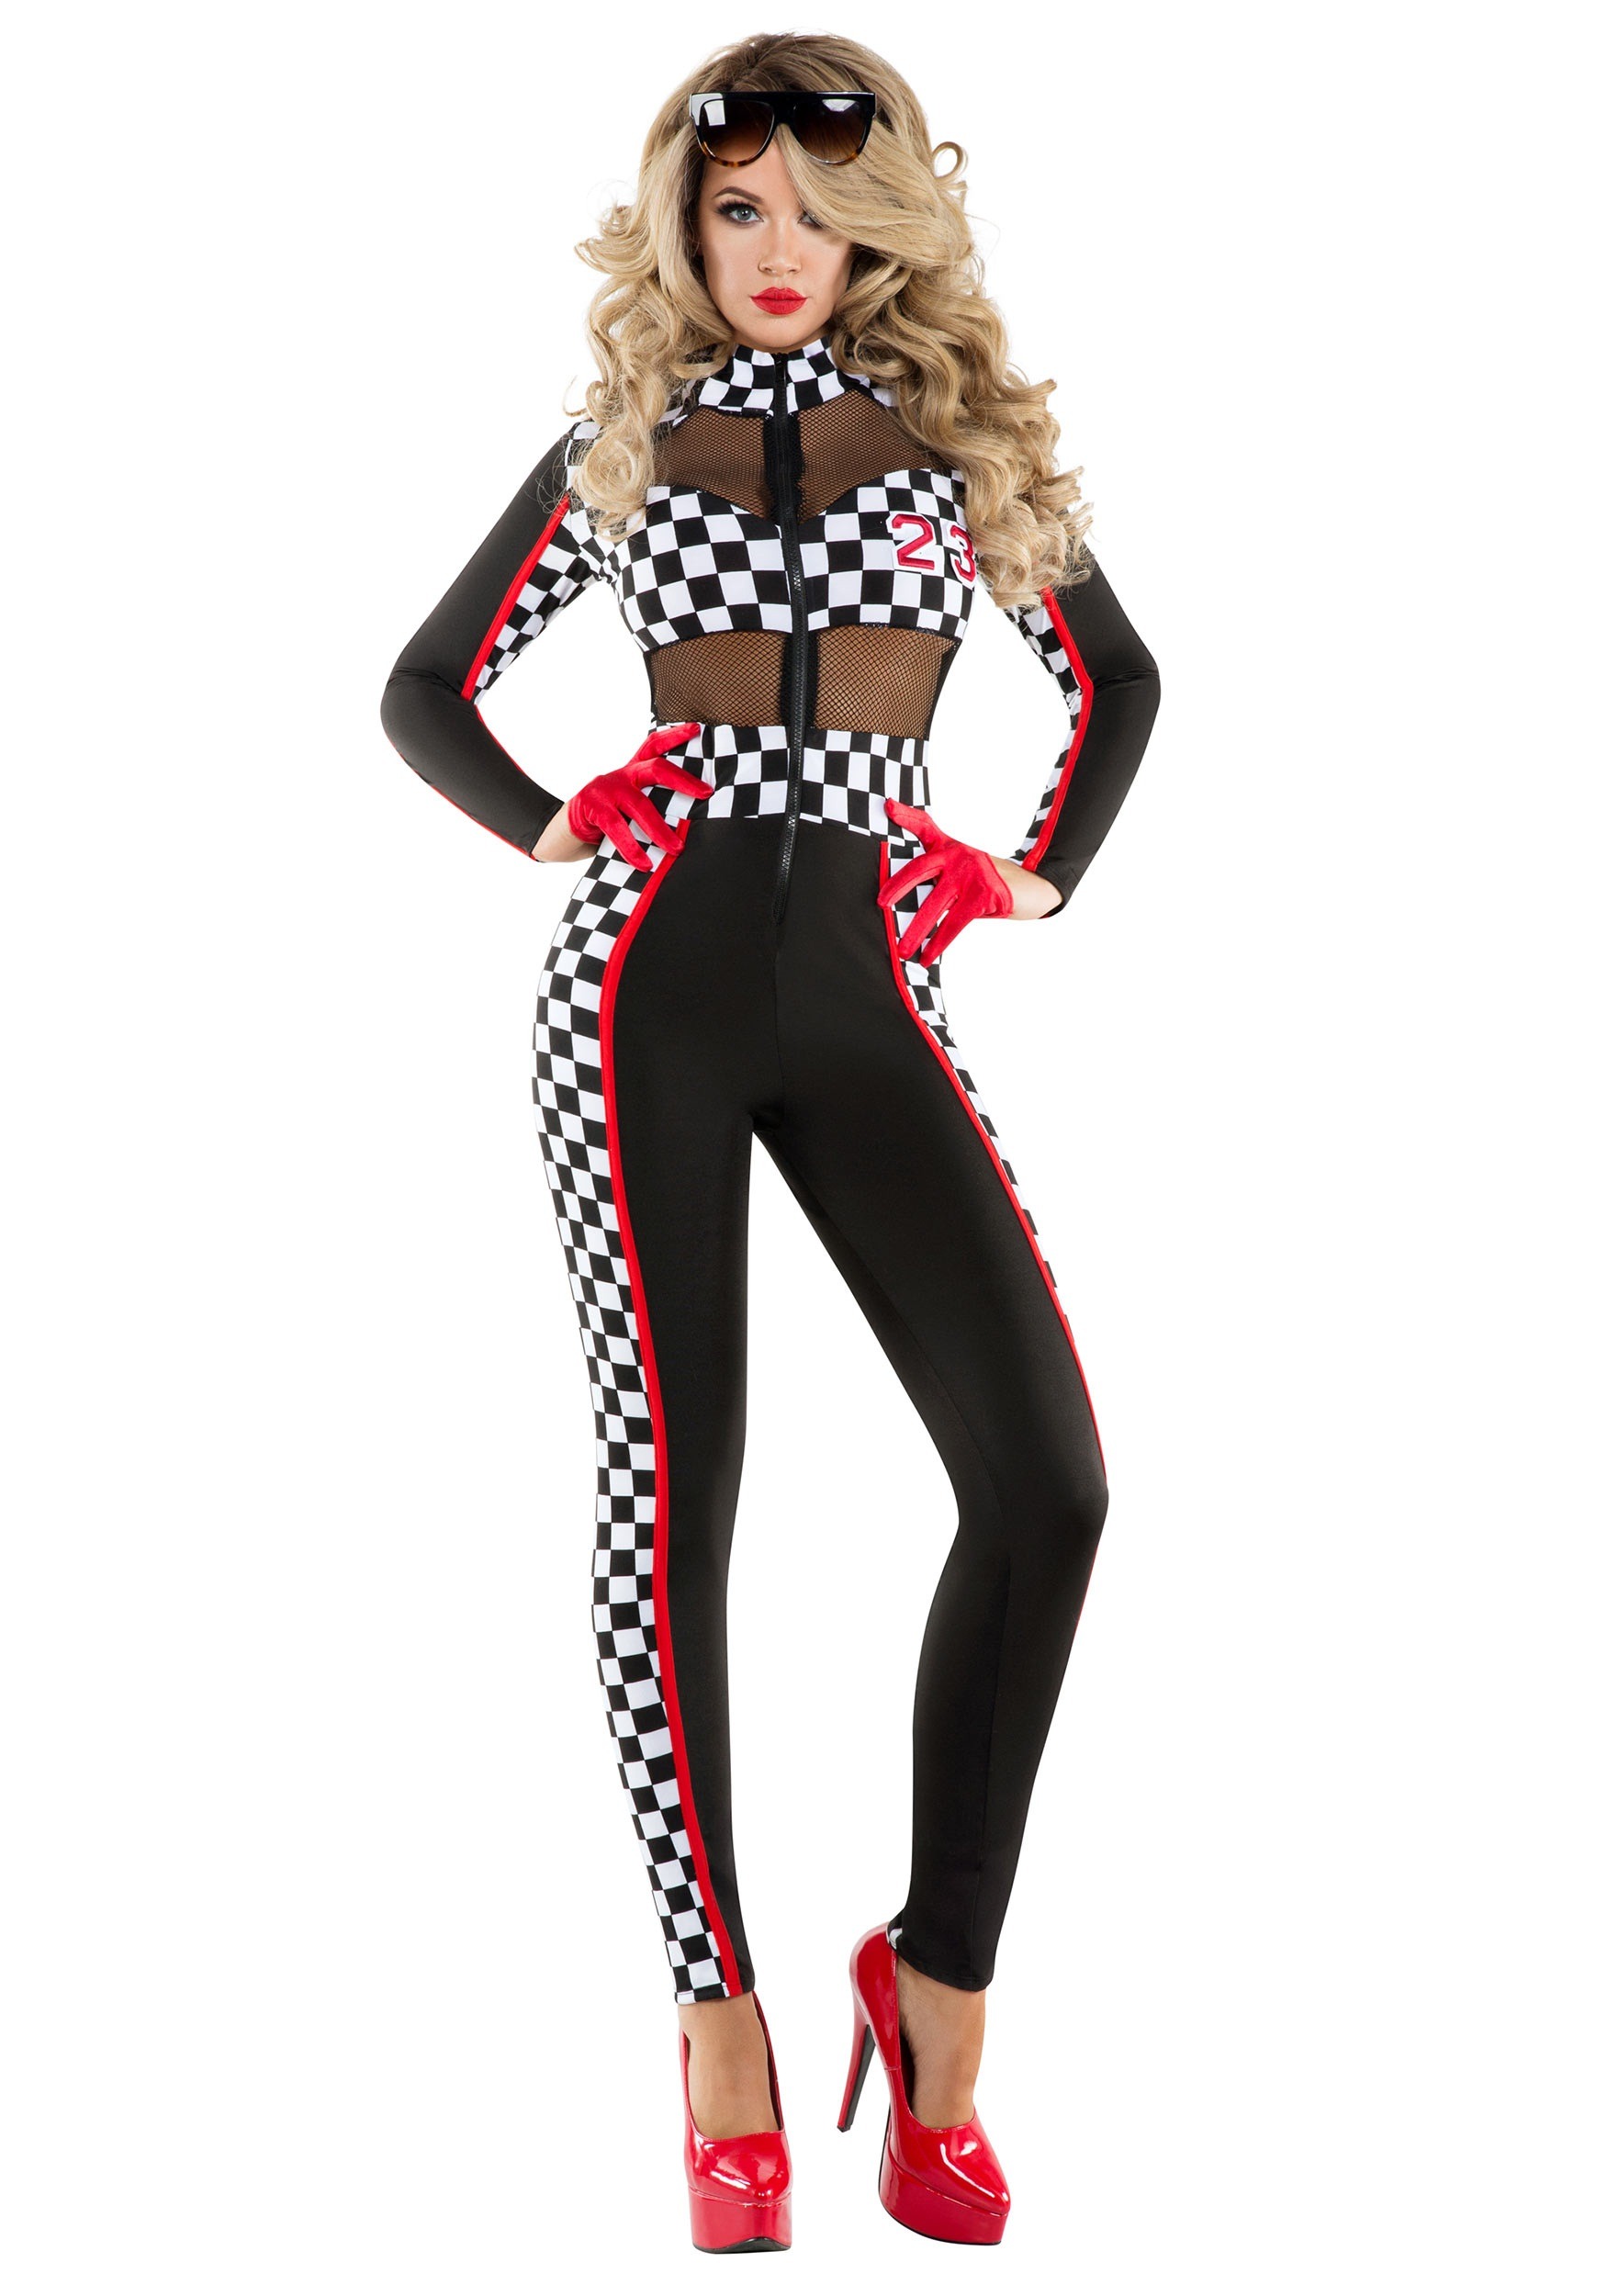 Photos - Fancy Dress RACER Starline, LLC. Racy  Costume for Women Black/Red/White SLS609 